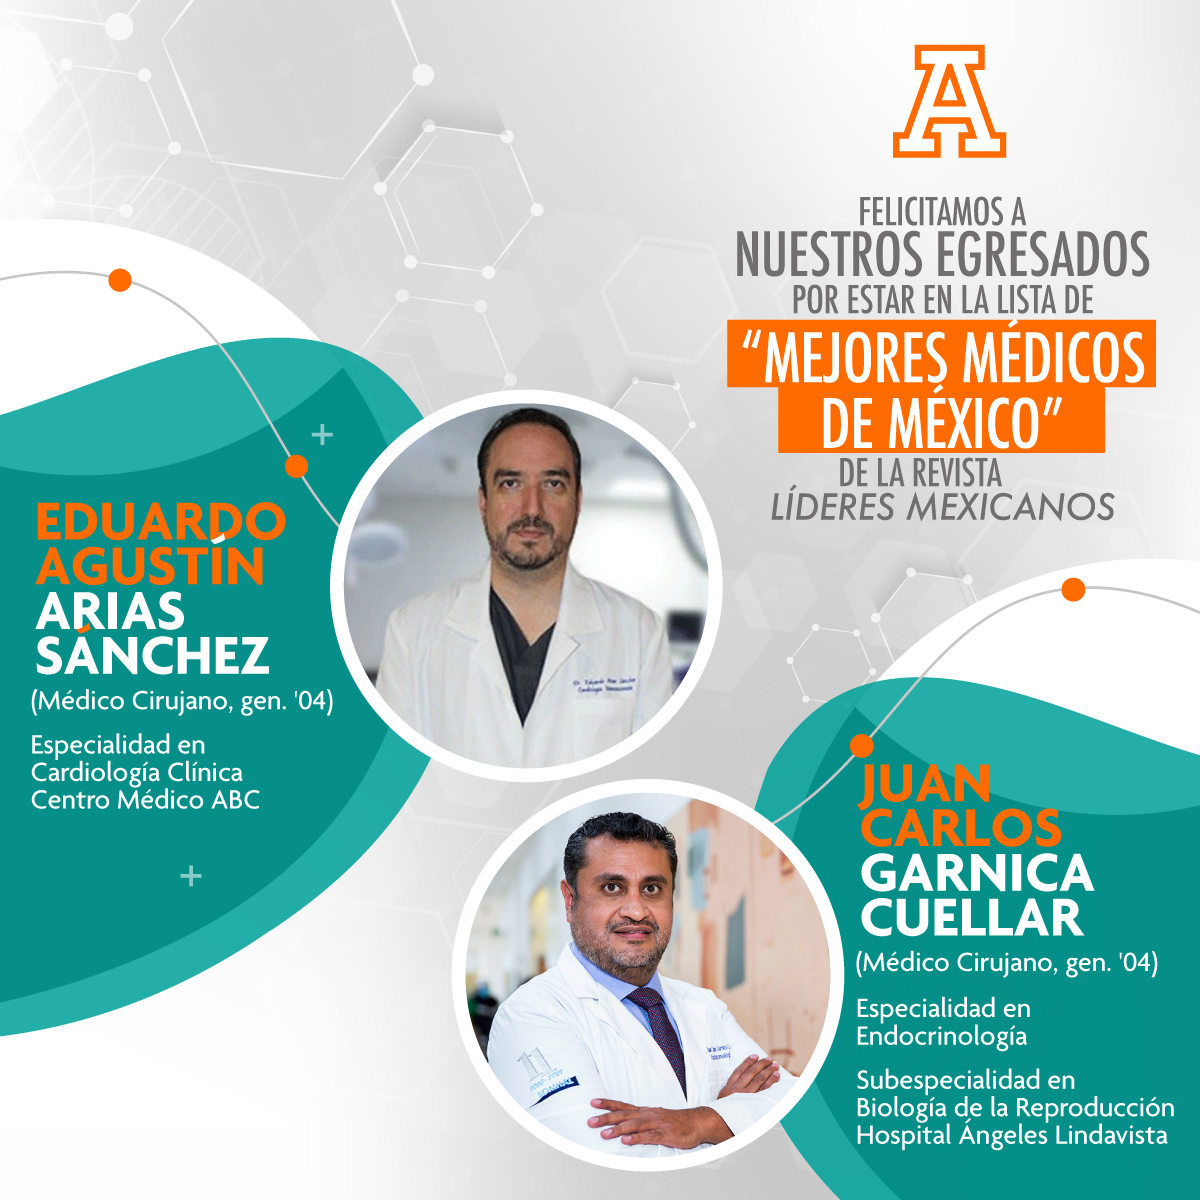 Egresados Anáhuac, entre los "Mejores médicos de México" de la revista Líderes Mexicanos